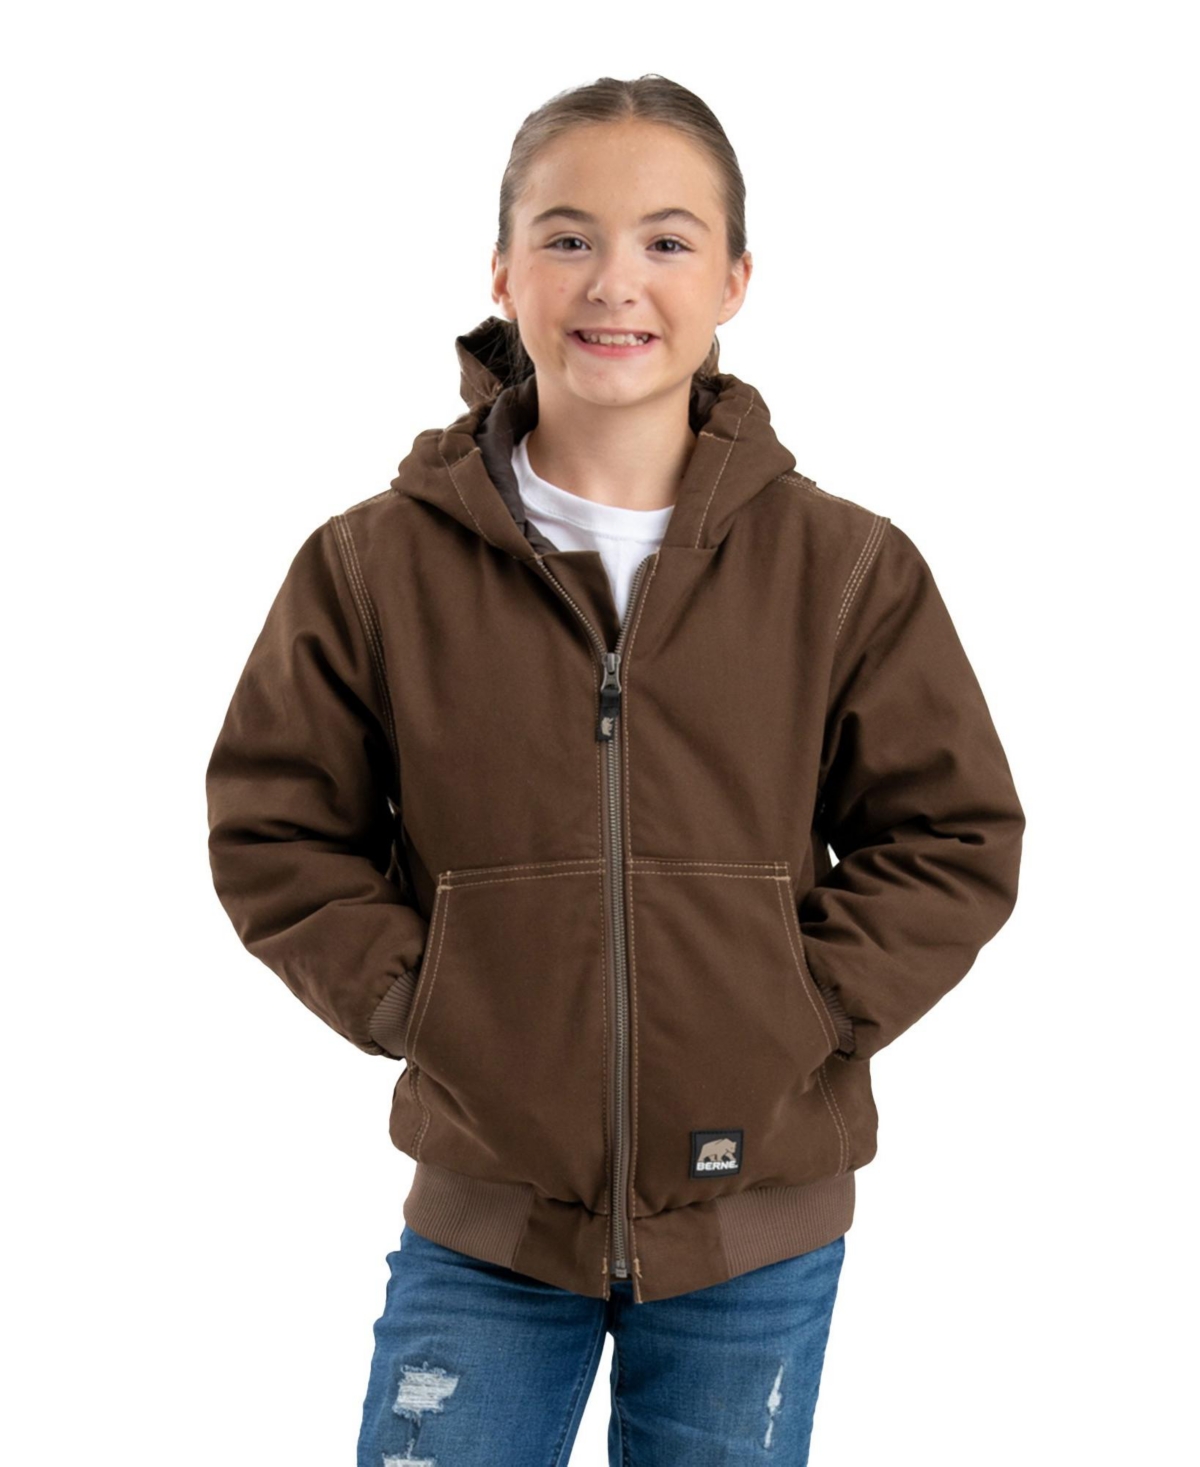 Child Youth Unisex Highland Softstone Duck Hooded Jacket - Plum